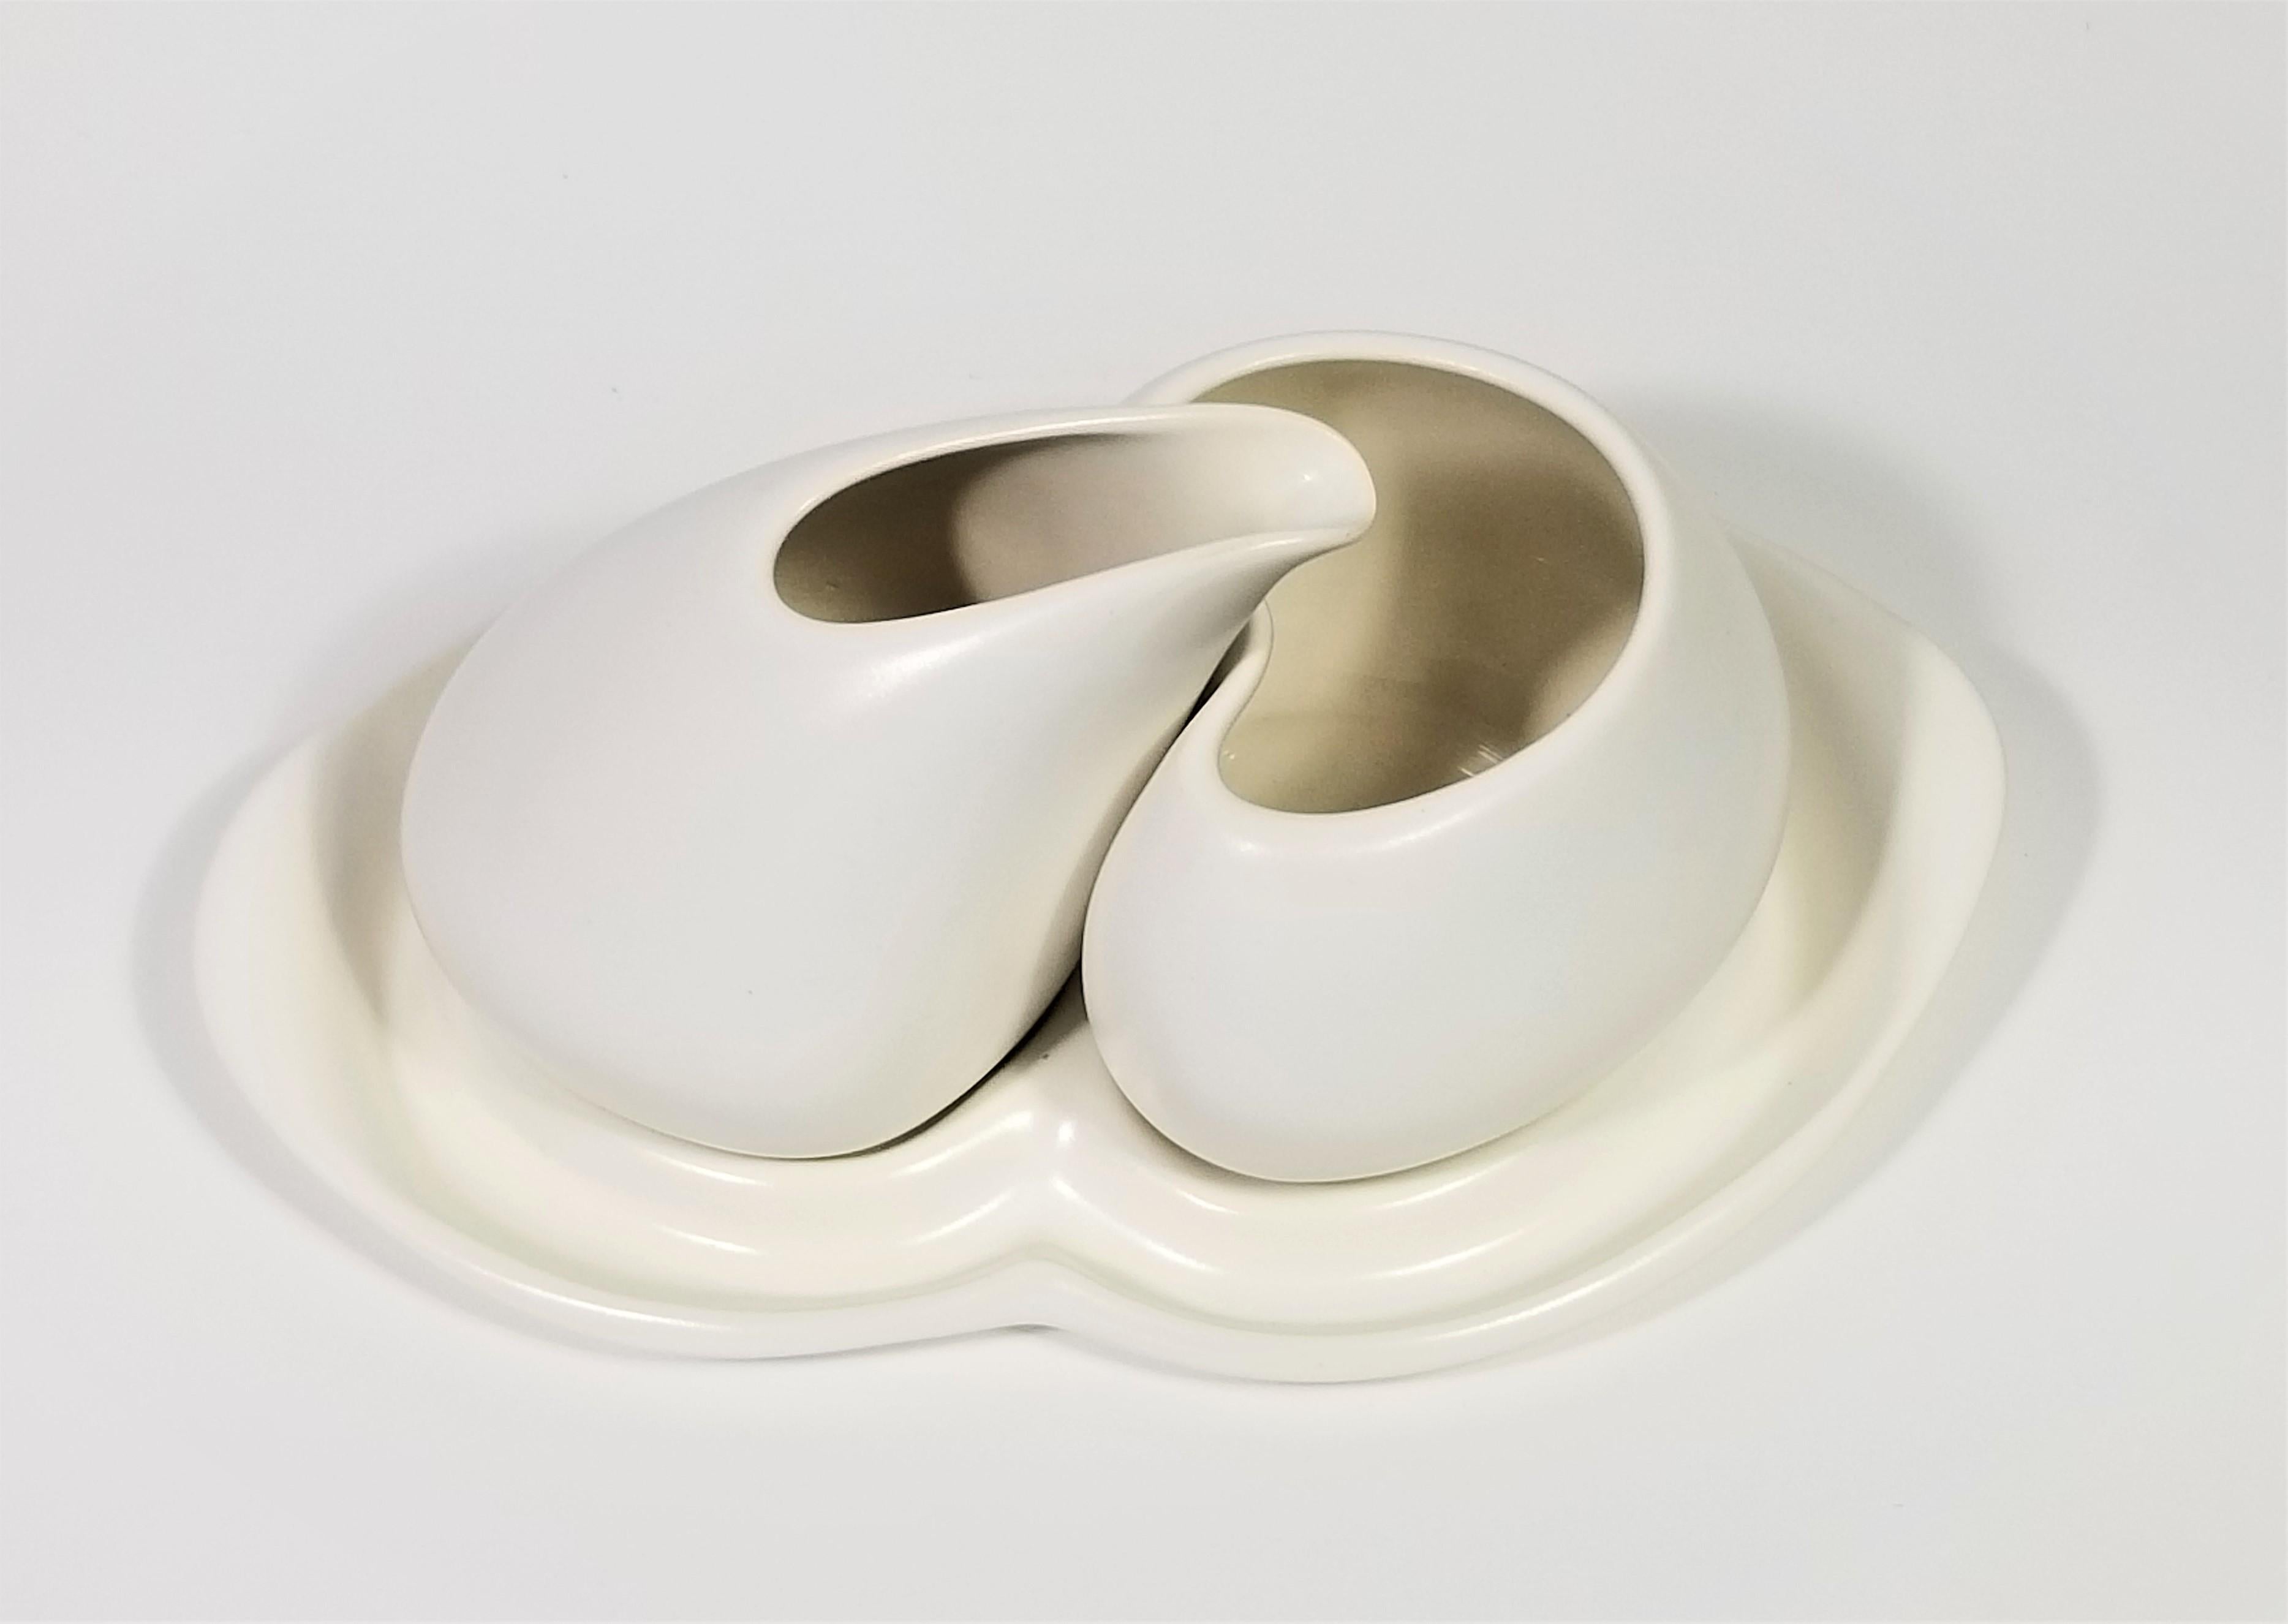 Porcelain Artist Signed Sculptural Modernist Cream and Sugar Set For Sale 3